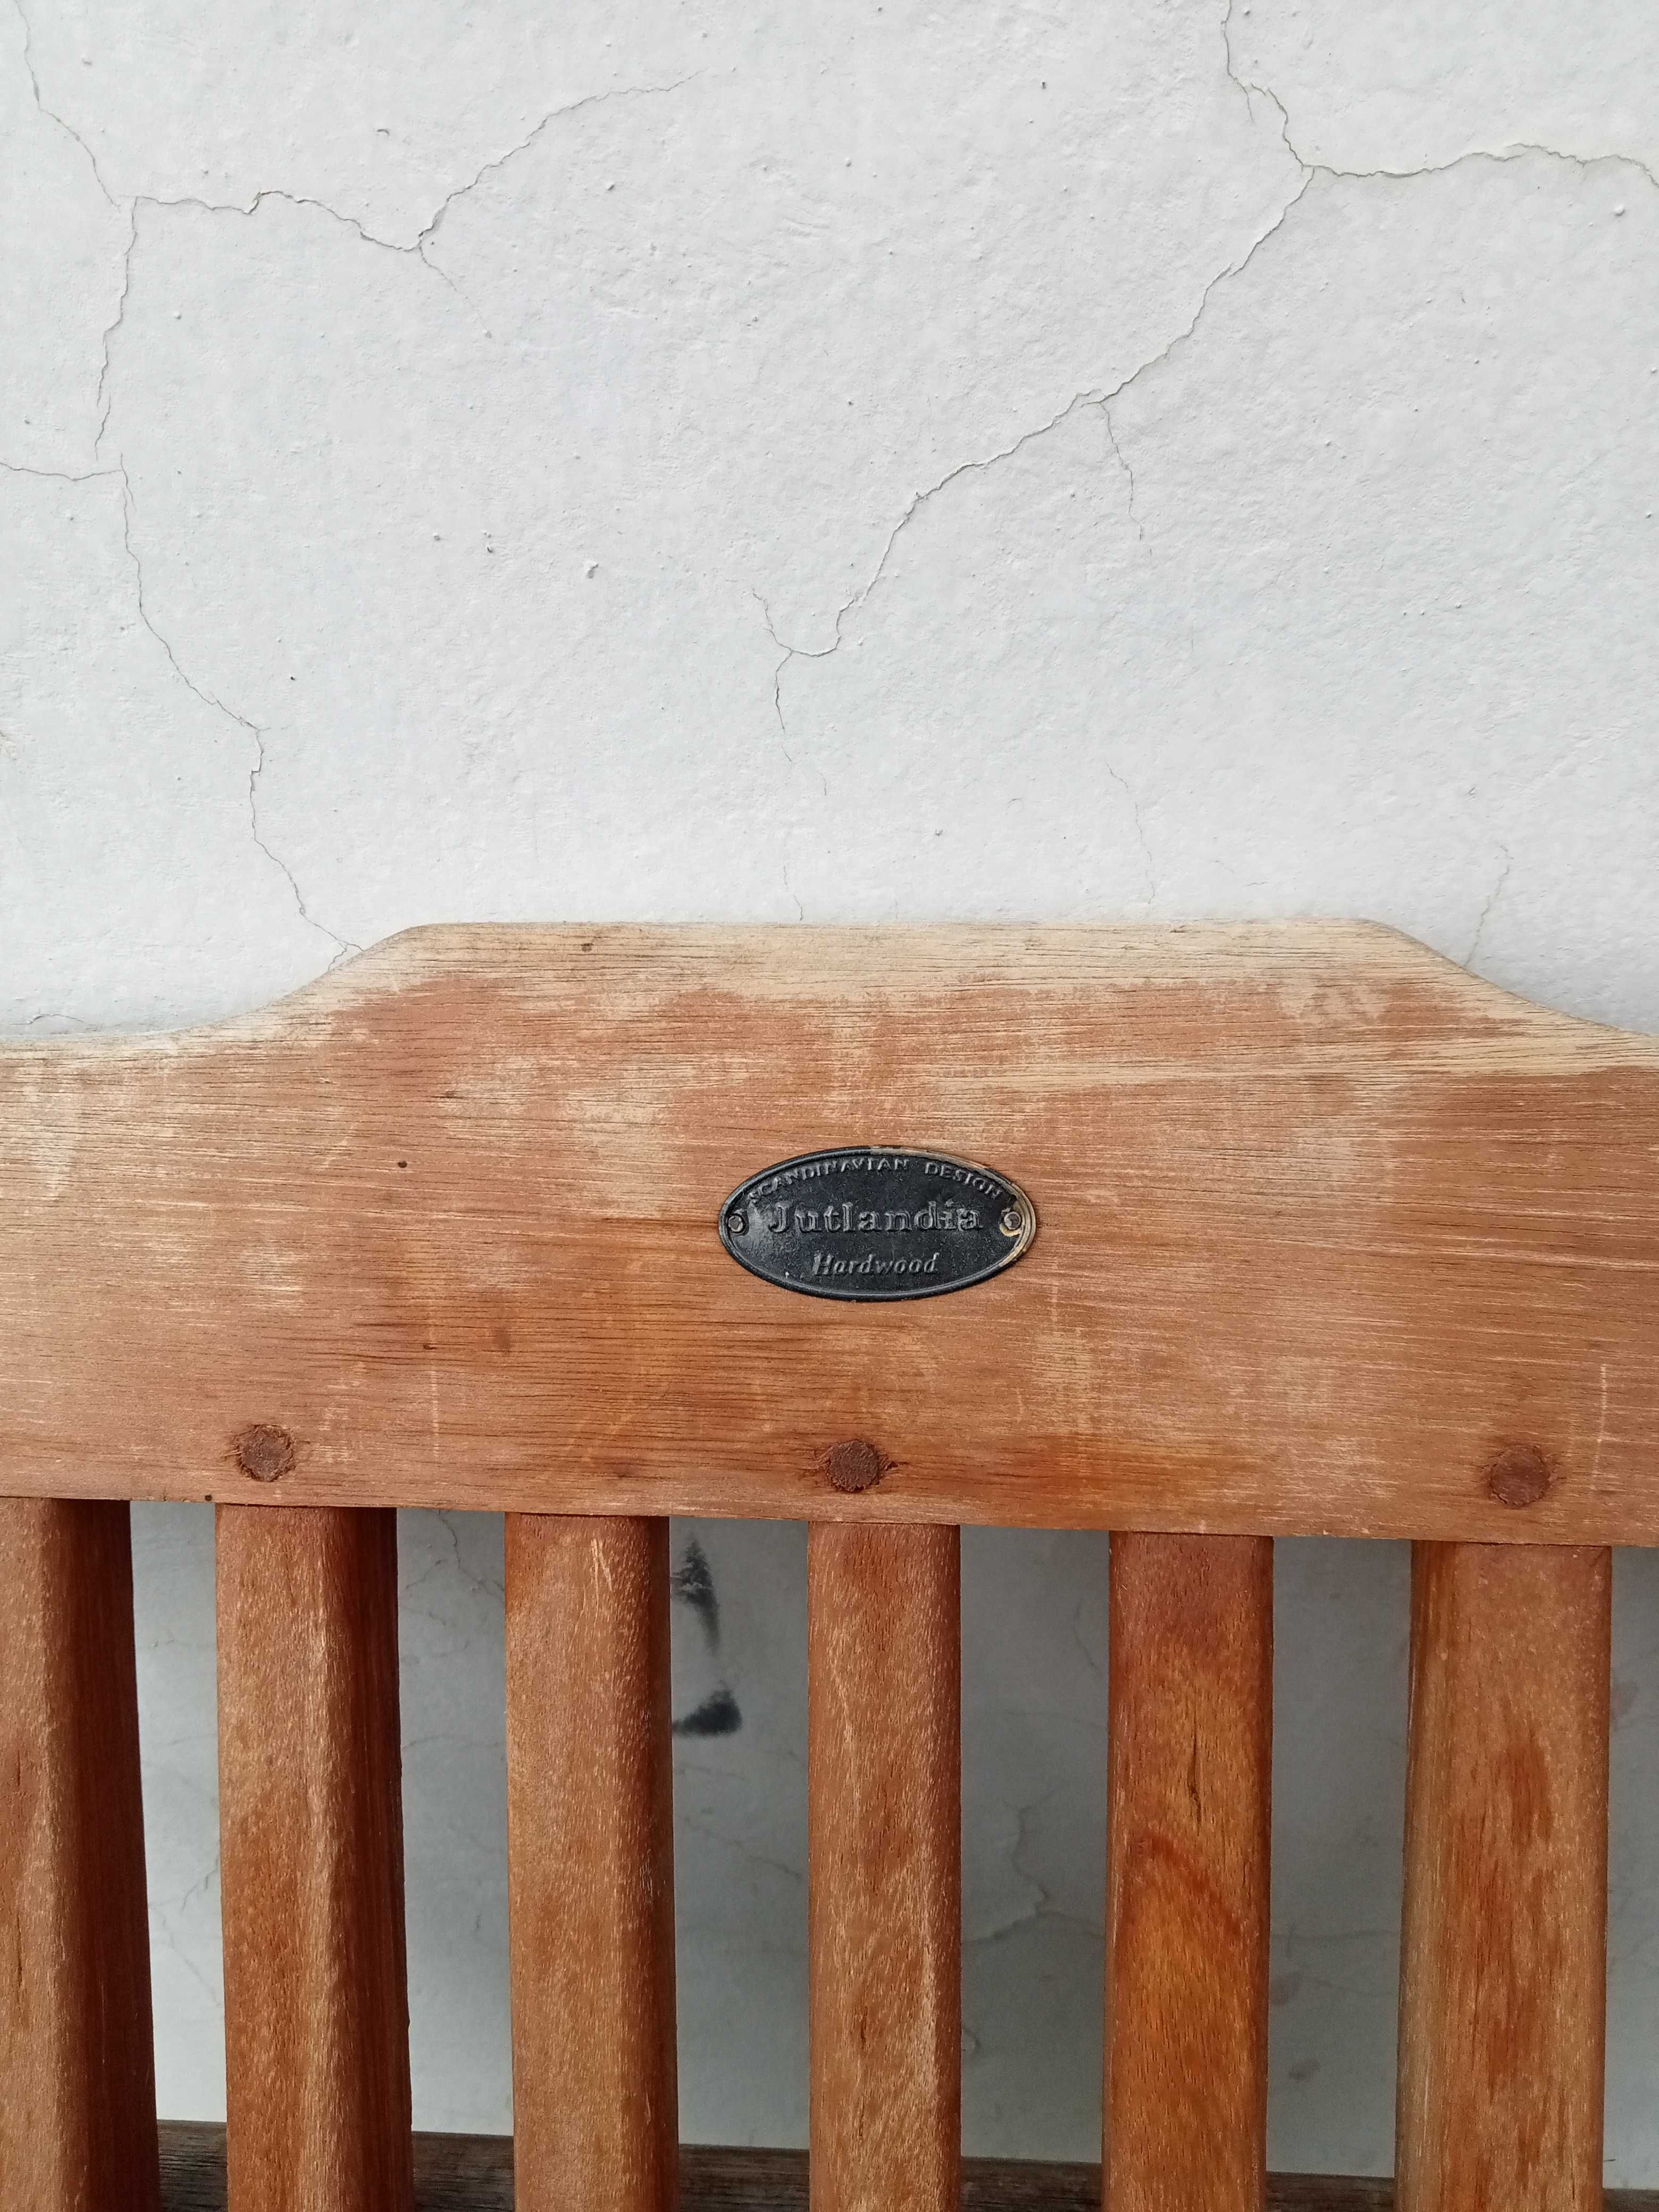 Vand scaun pliabil de gradina din lemn esenta tare netratat